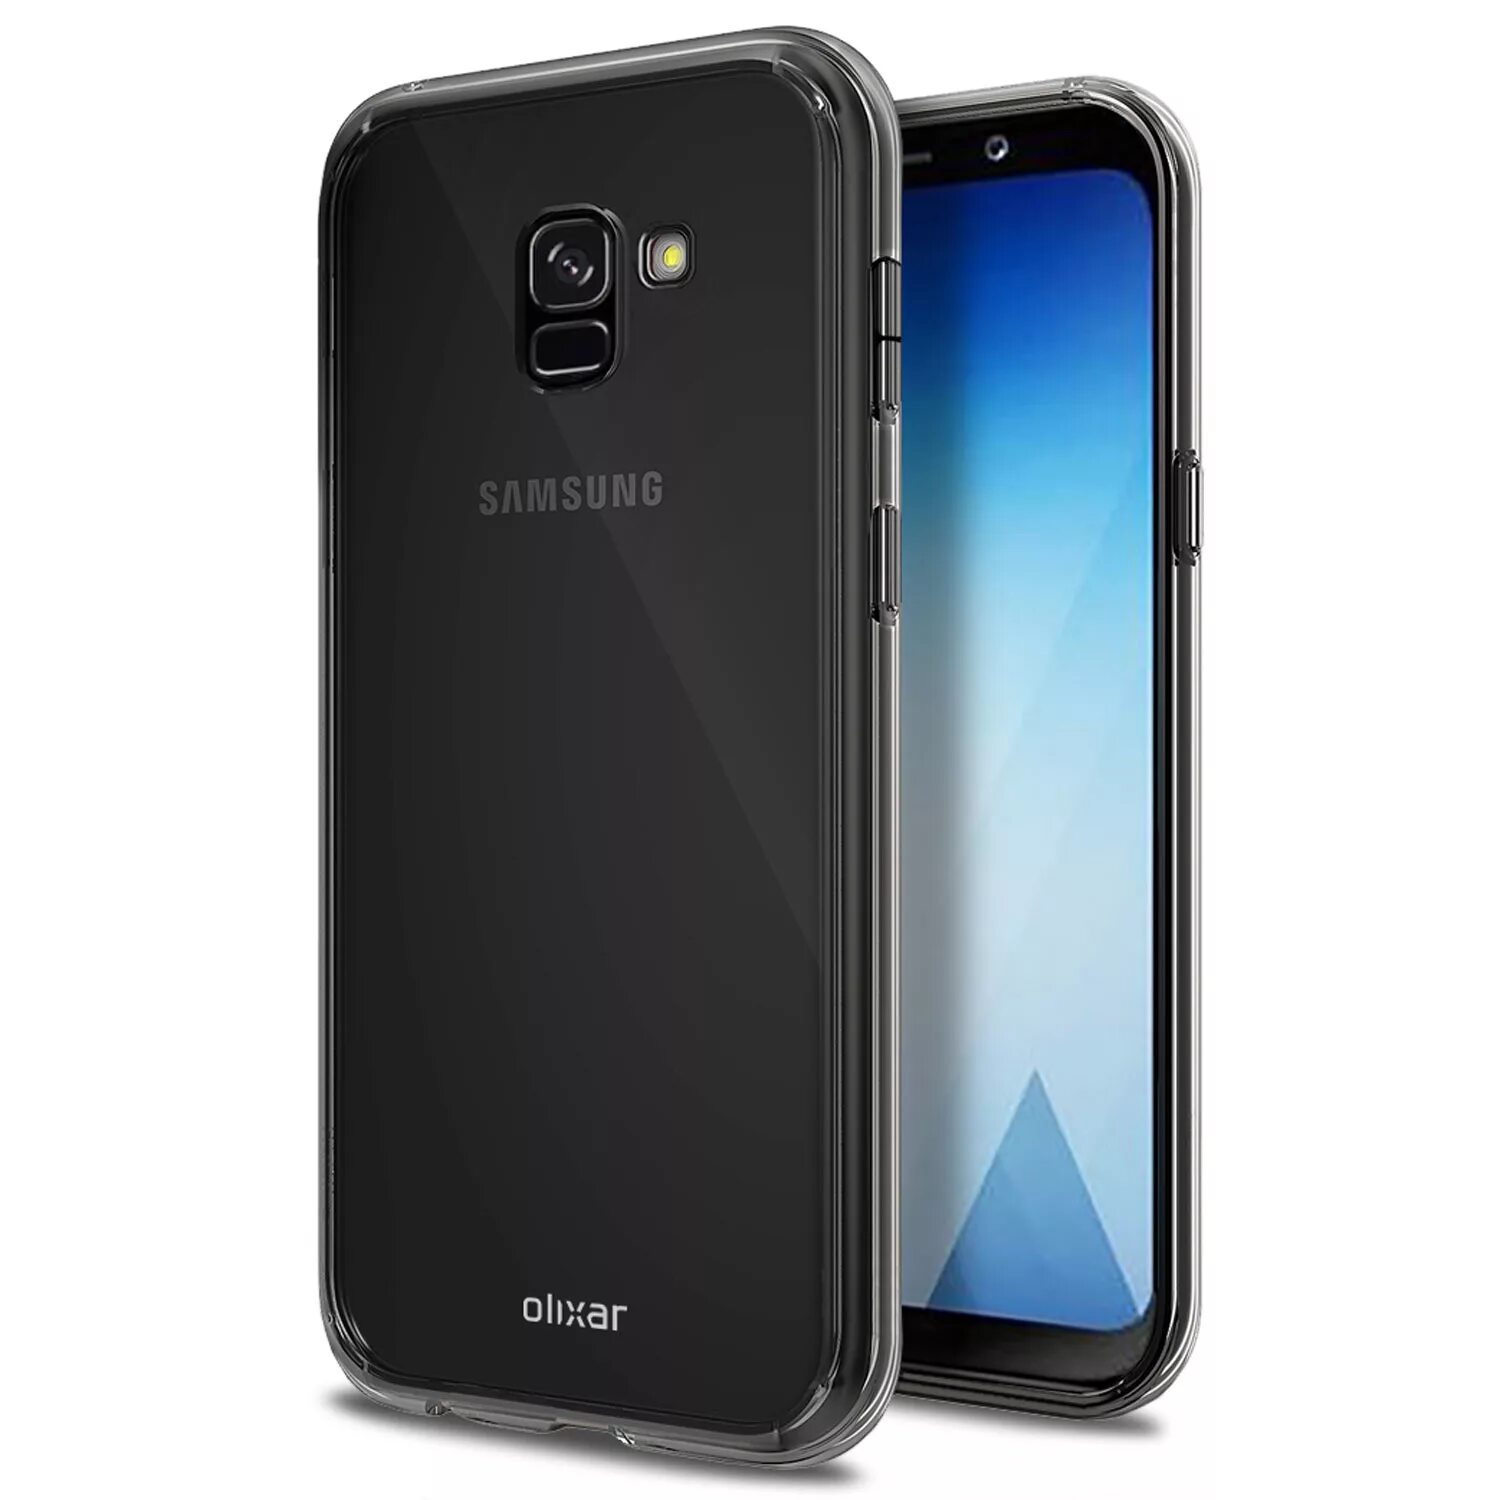 Samsung a5 2018. Самсунг а5 2018. Samsung Galaxy a3 2018. Galaxy a5 (2018) SM-a530f.